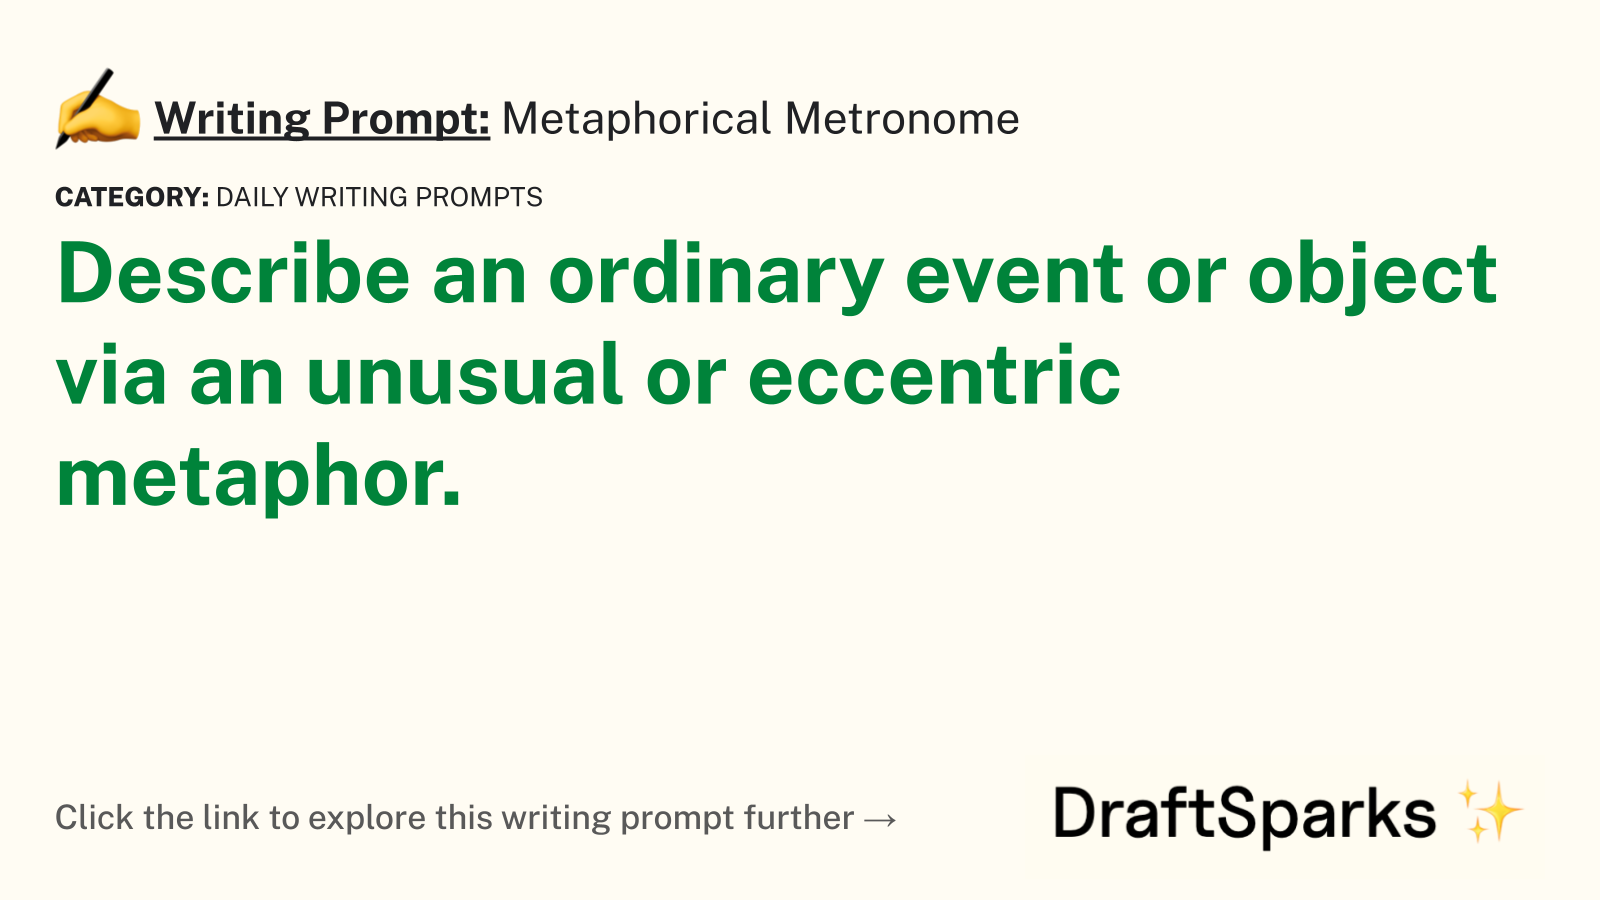 Metaphorical Metronome